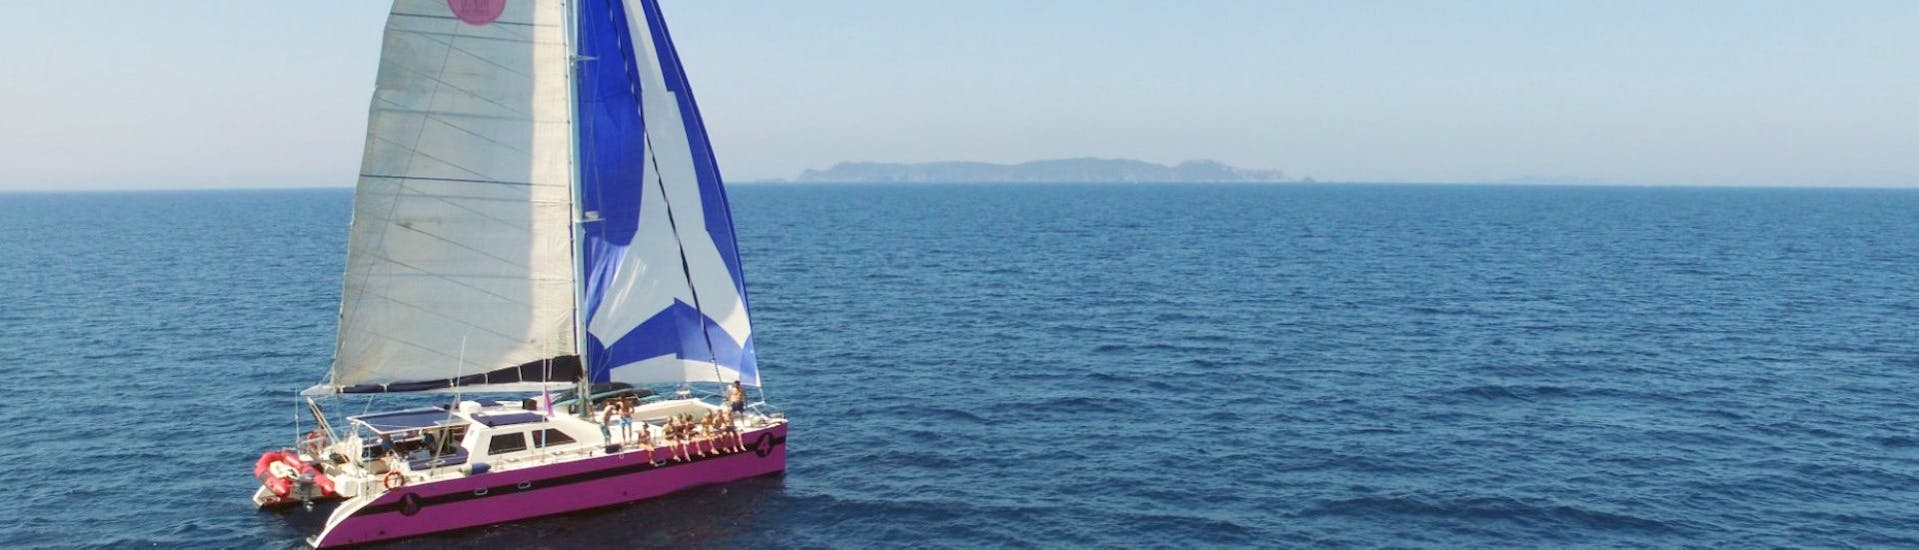 Party-Katamaran-Tour im Golf von Saint-Tropez mit Caseneuve Maxi Catamaran.